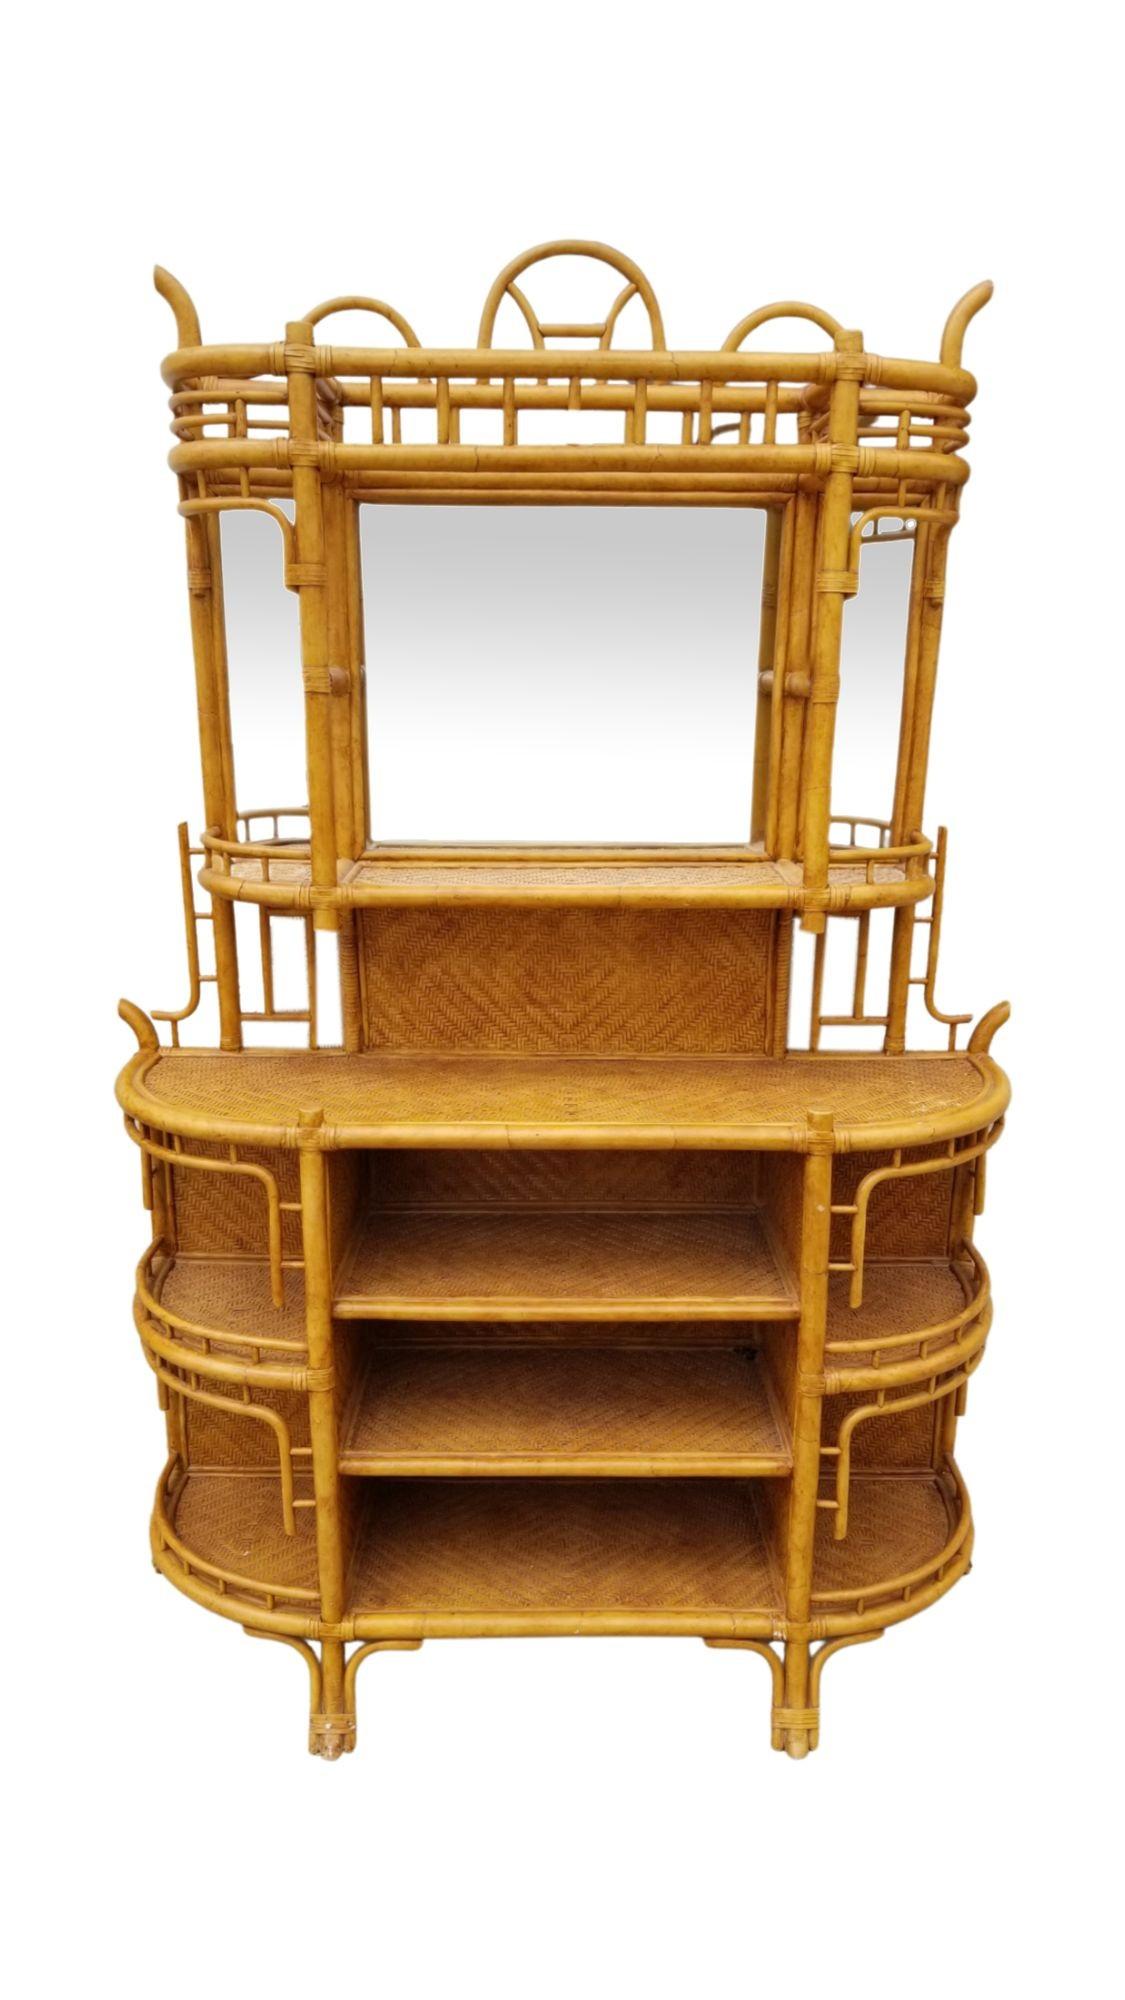 L'étagère d'inspiration James Mont est un meuble conçu avec des étagères ouvertes ou des niveaux de présentation, généralement en bois, en métal ou en verre. Il est à la fois fonctionnel et décoratif, offrant une façon élégante de présenter et